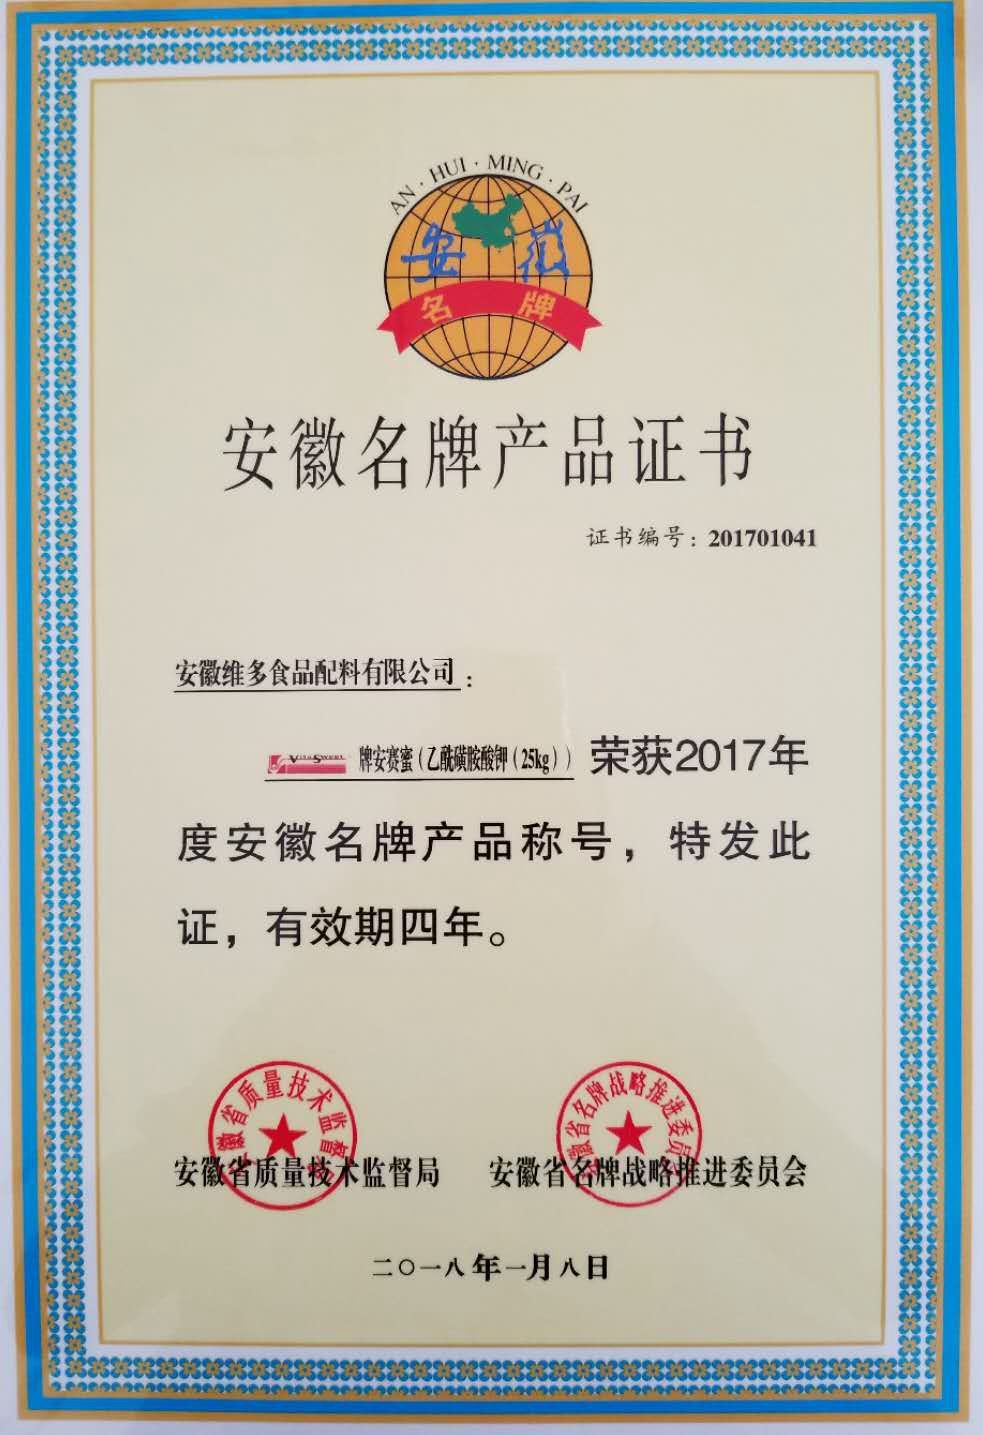 維多牌安賽蜜榮獲“安徽省名牌產品”稱號